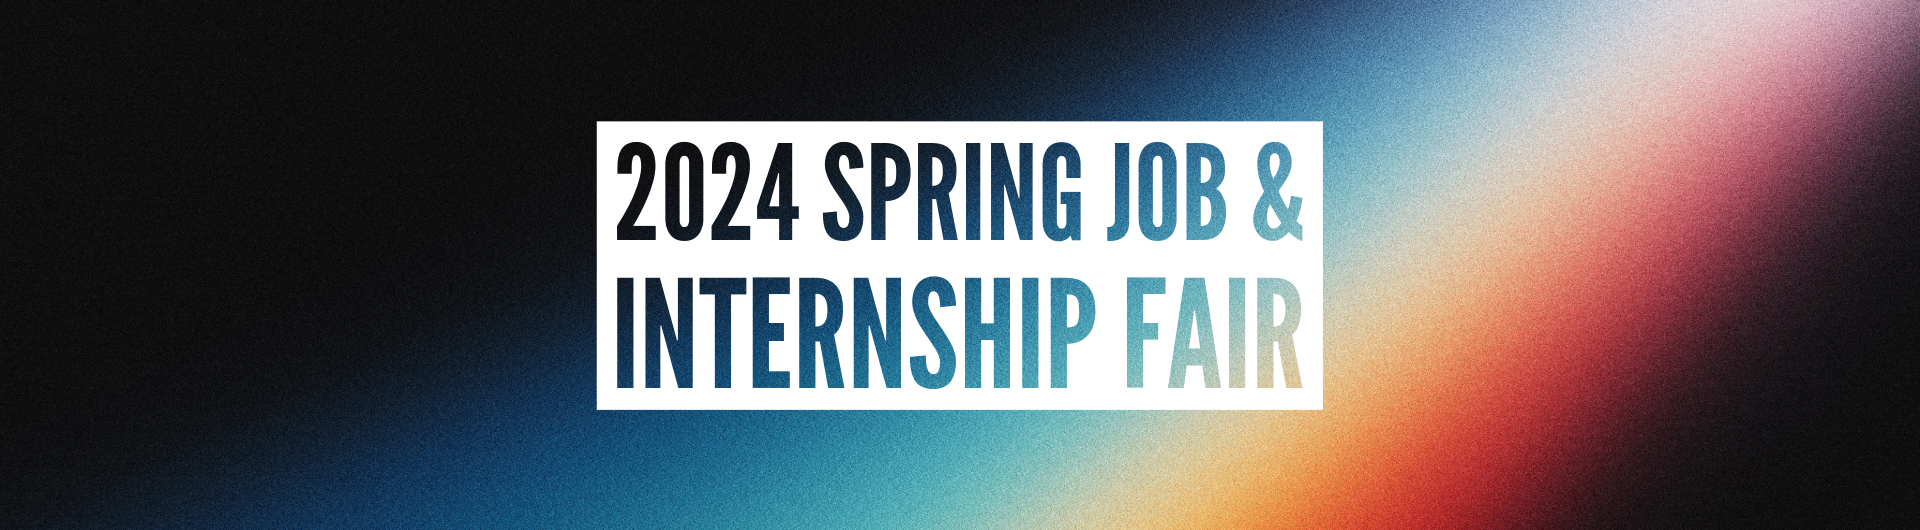 2024 Spring Job & Internship Fair 